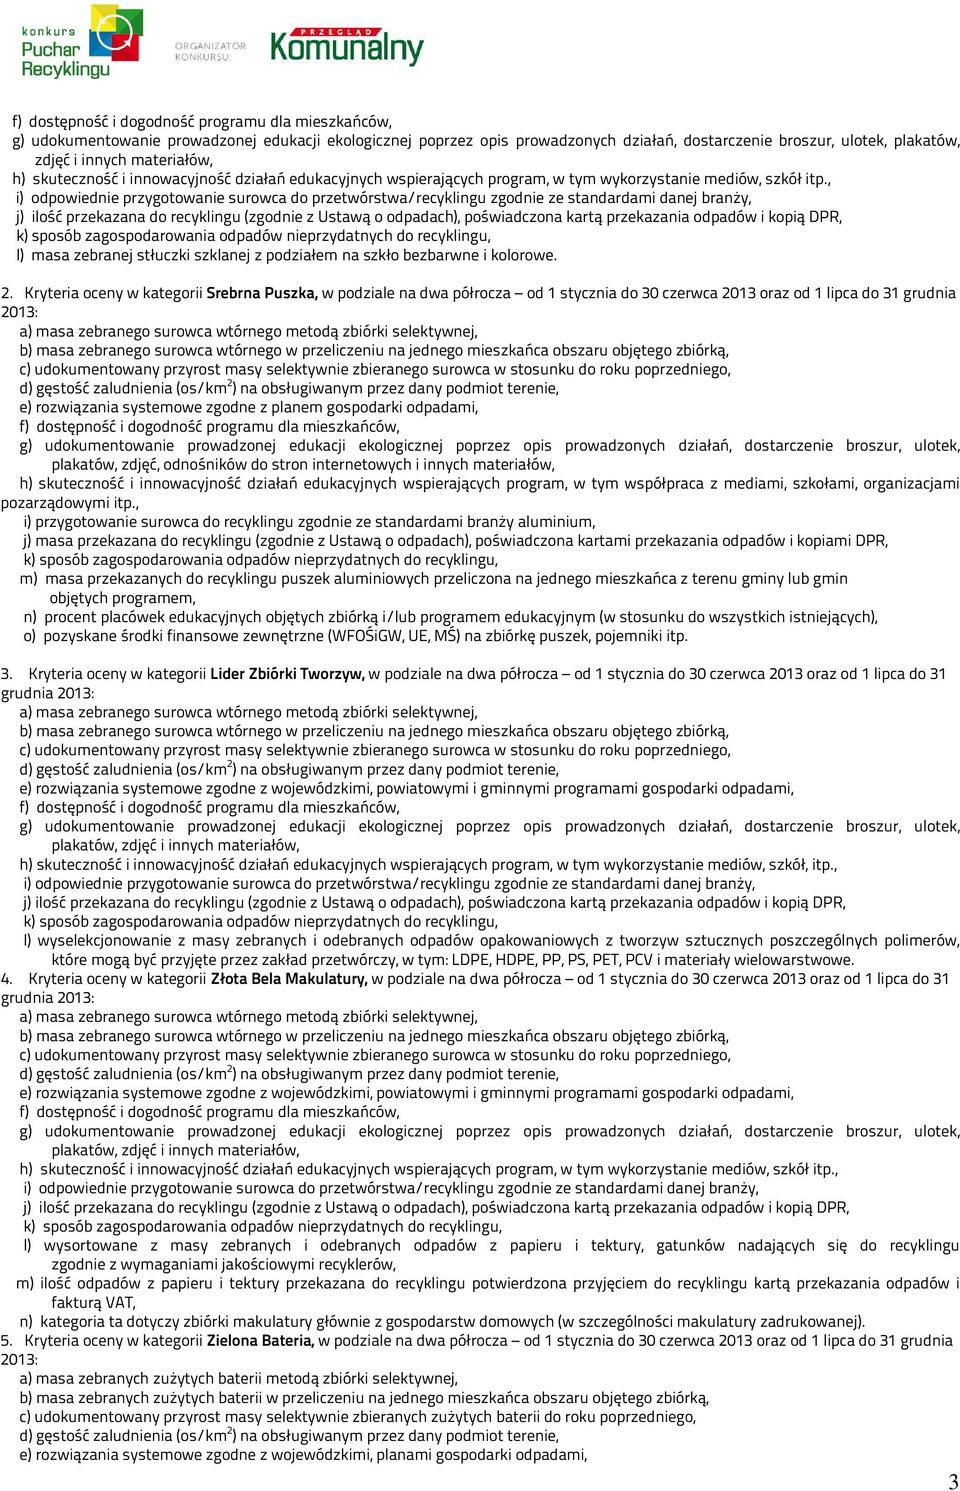 Kryteria oceny w kategorii Srebrna Puszka, w podziale na dwa półrocza od 1 stycznia do 30 czerwca 2013 oraz od 1 lipca do 31 grudnia 2013: e) rozwiązania systemowe zgodne z planem gospodarki